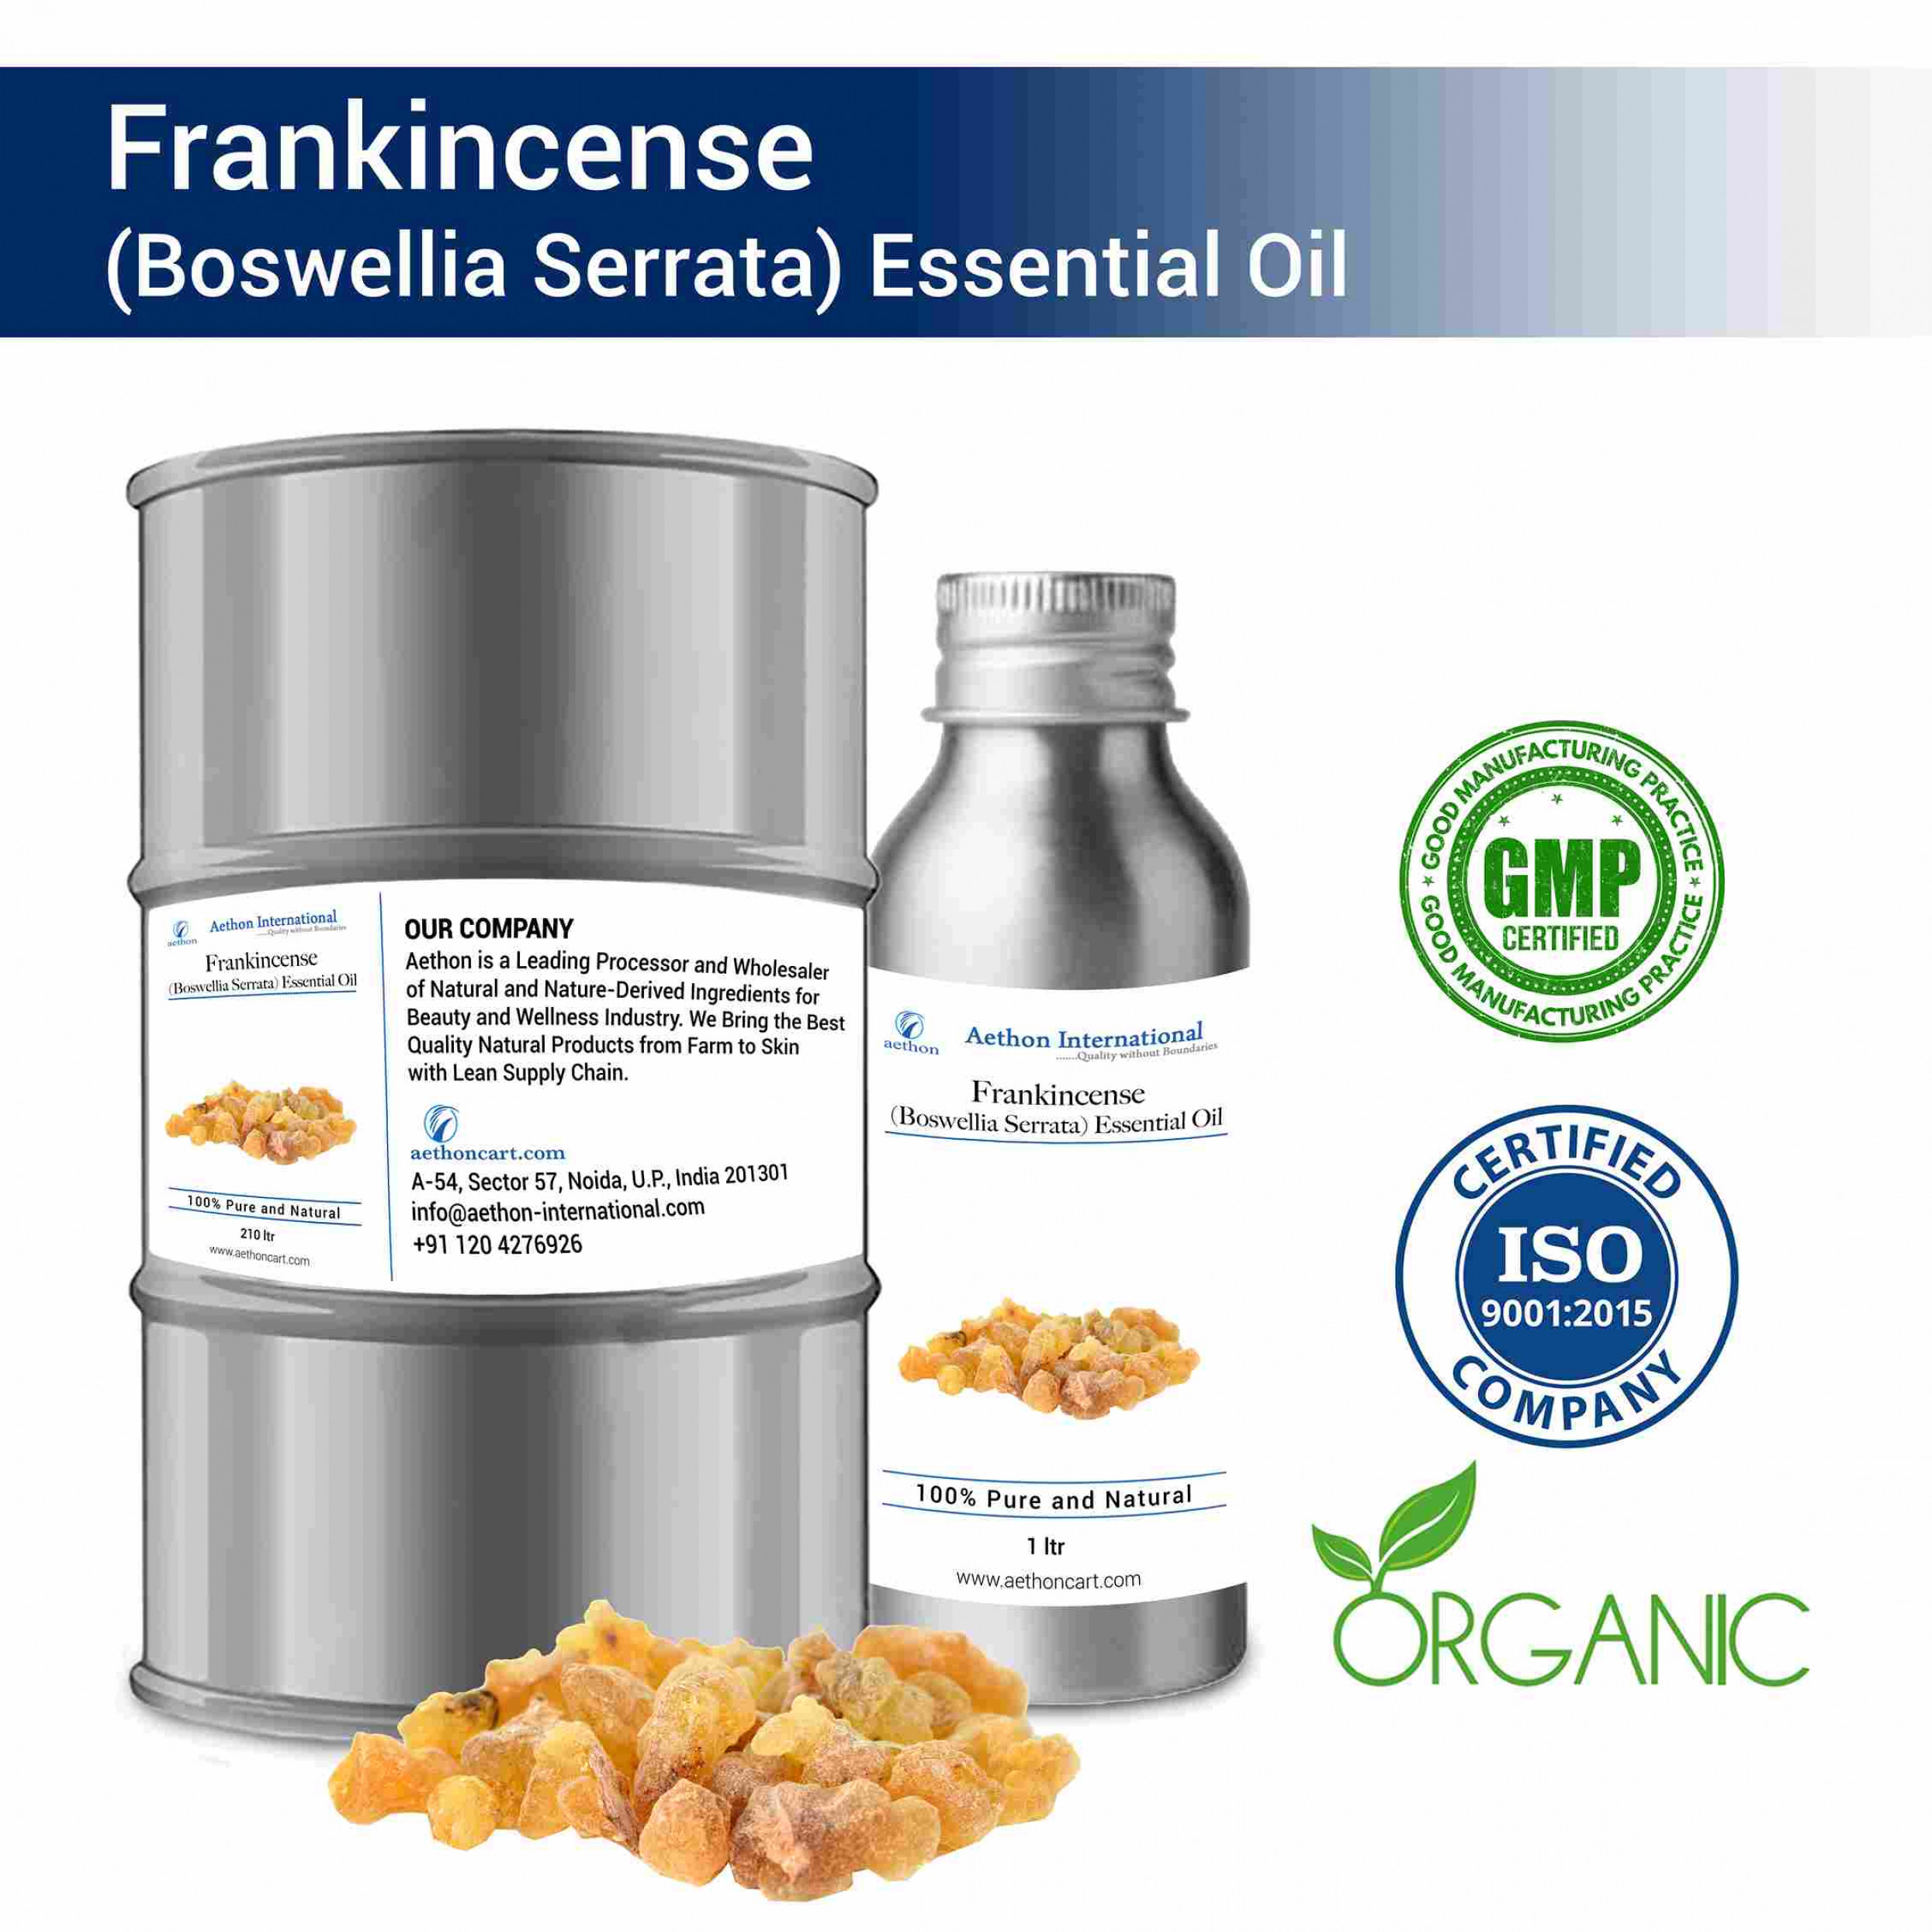 Frankincense (Boswellia Serrata) Essential Oil